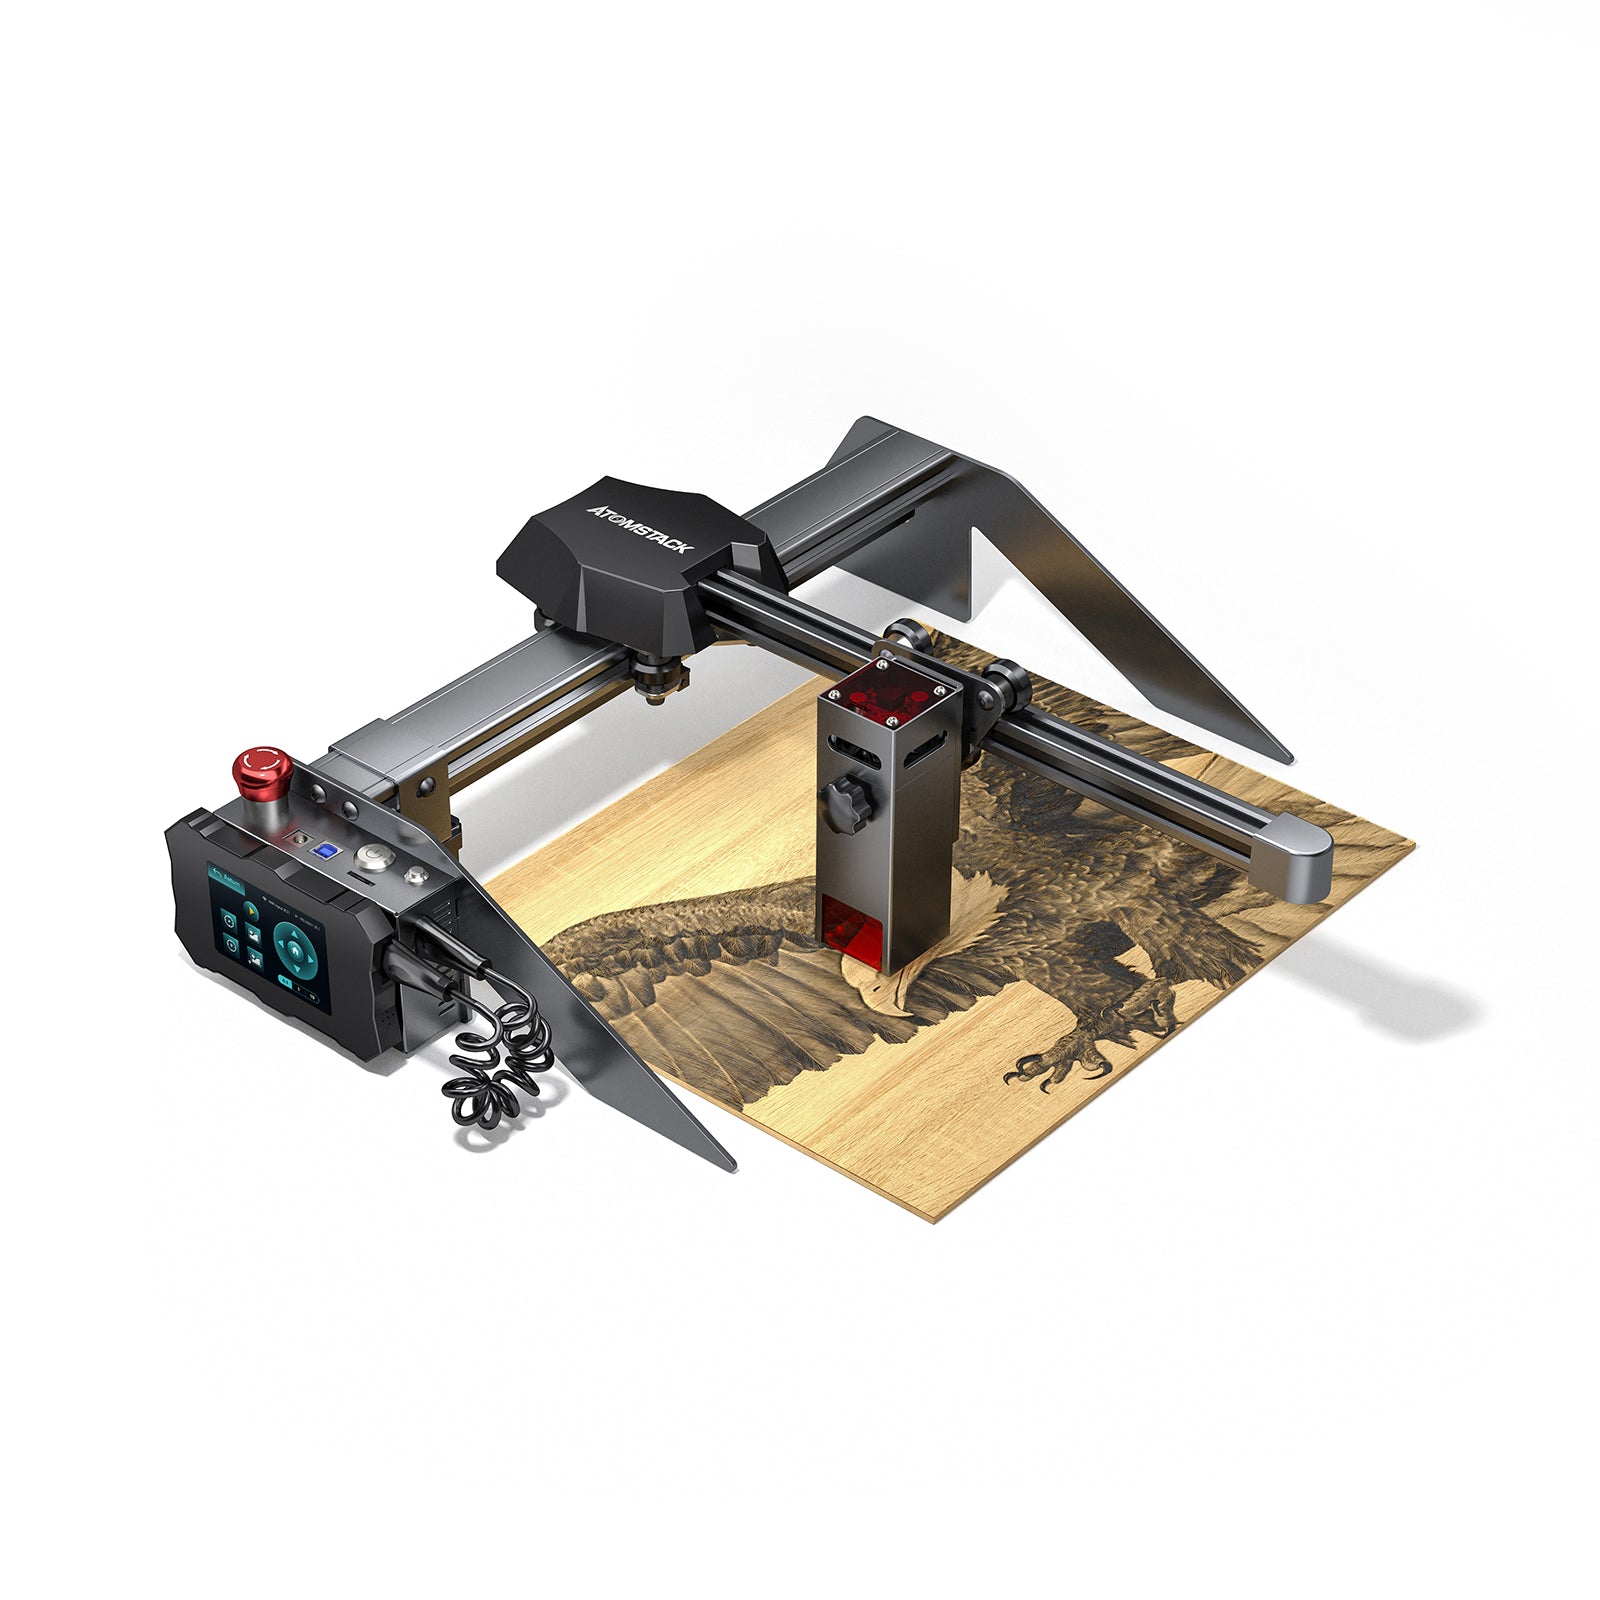 Refurbished AtomStack P9 M40 Laser Engraver Engraving Machine Support Offline Engraving for Wood Metal